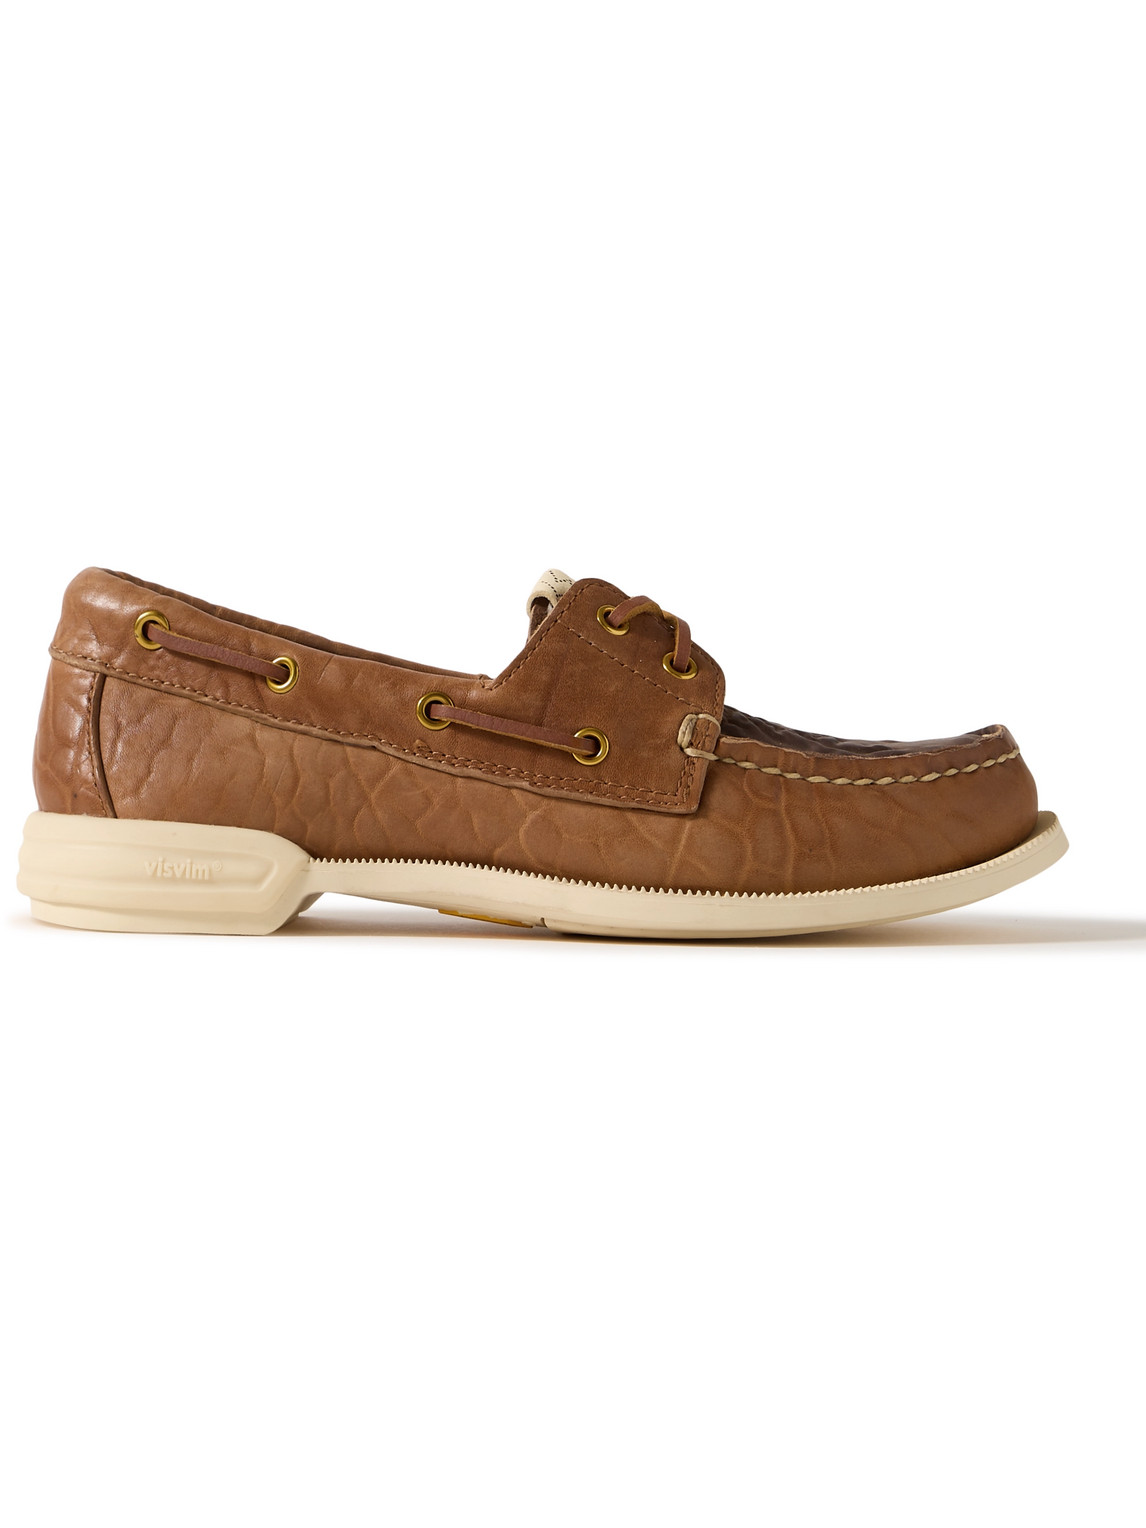 Visvim - Americana II Eye-Folk Textured-Leather Boat Shoes - Men - Brown - US 11 von Visvim